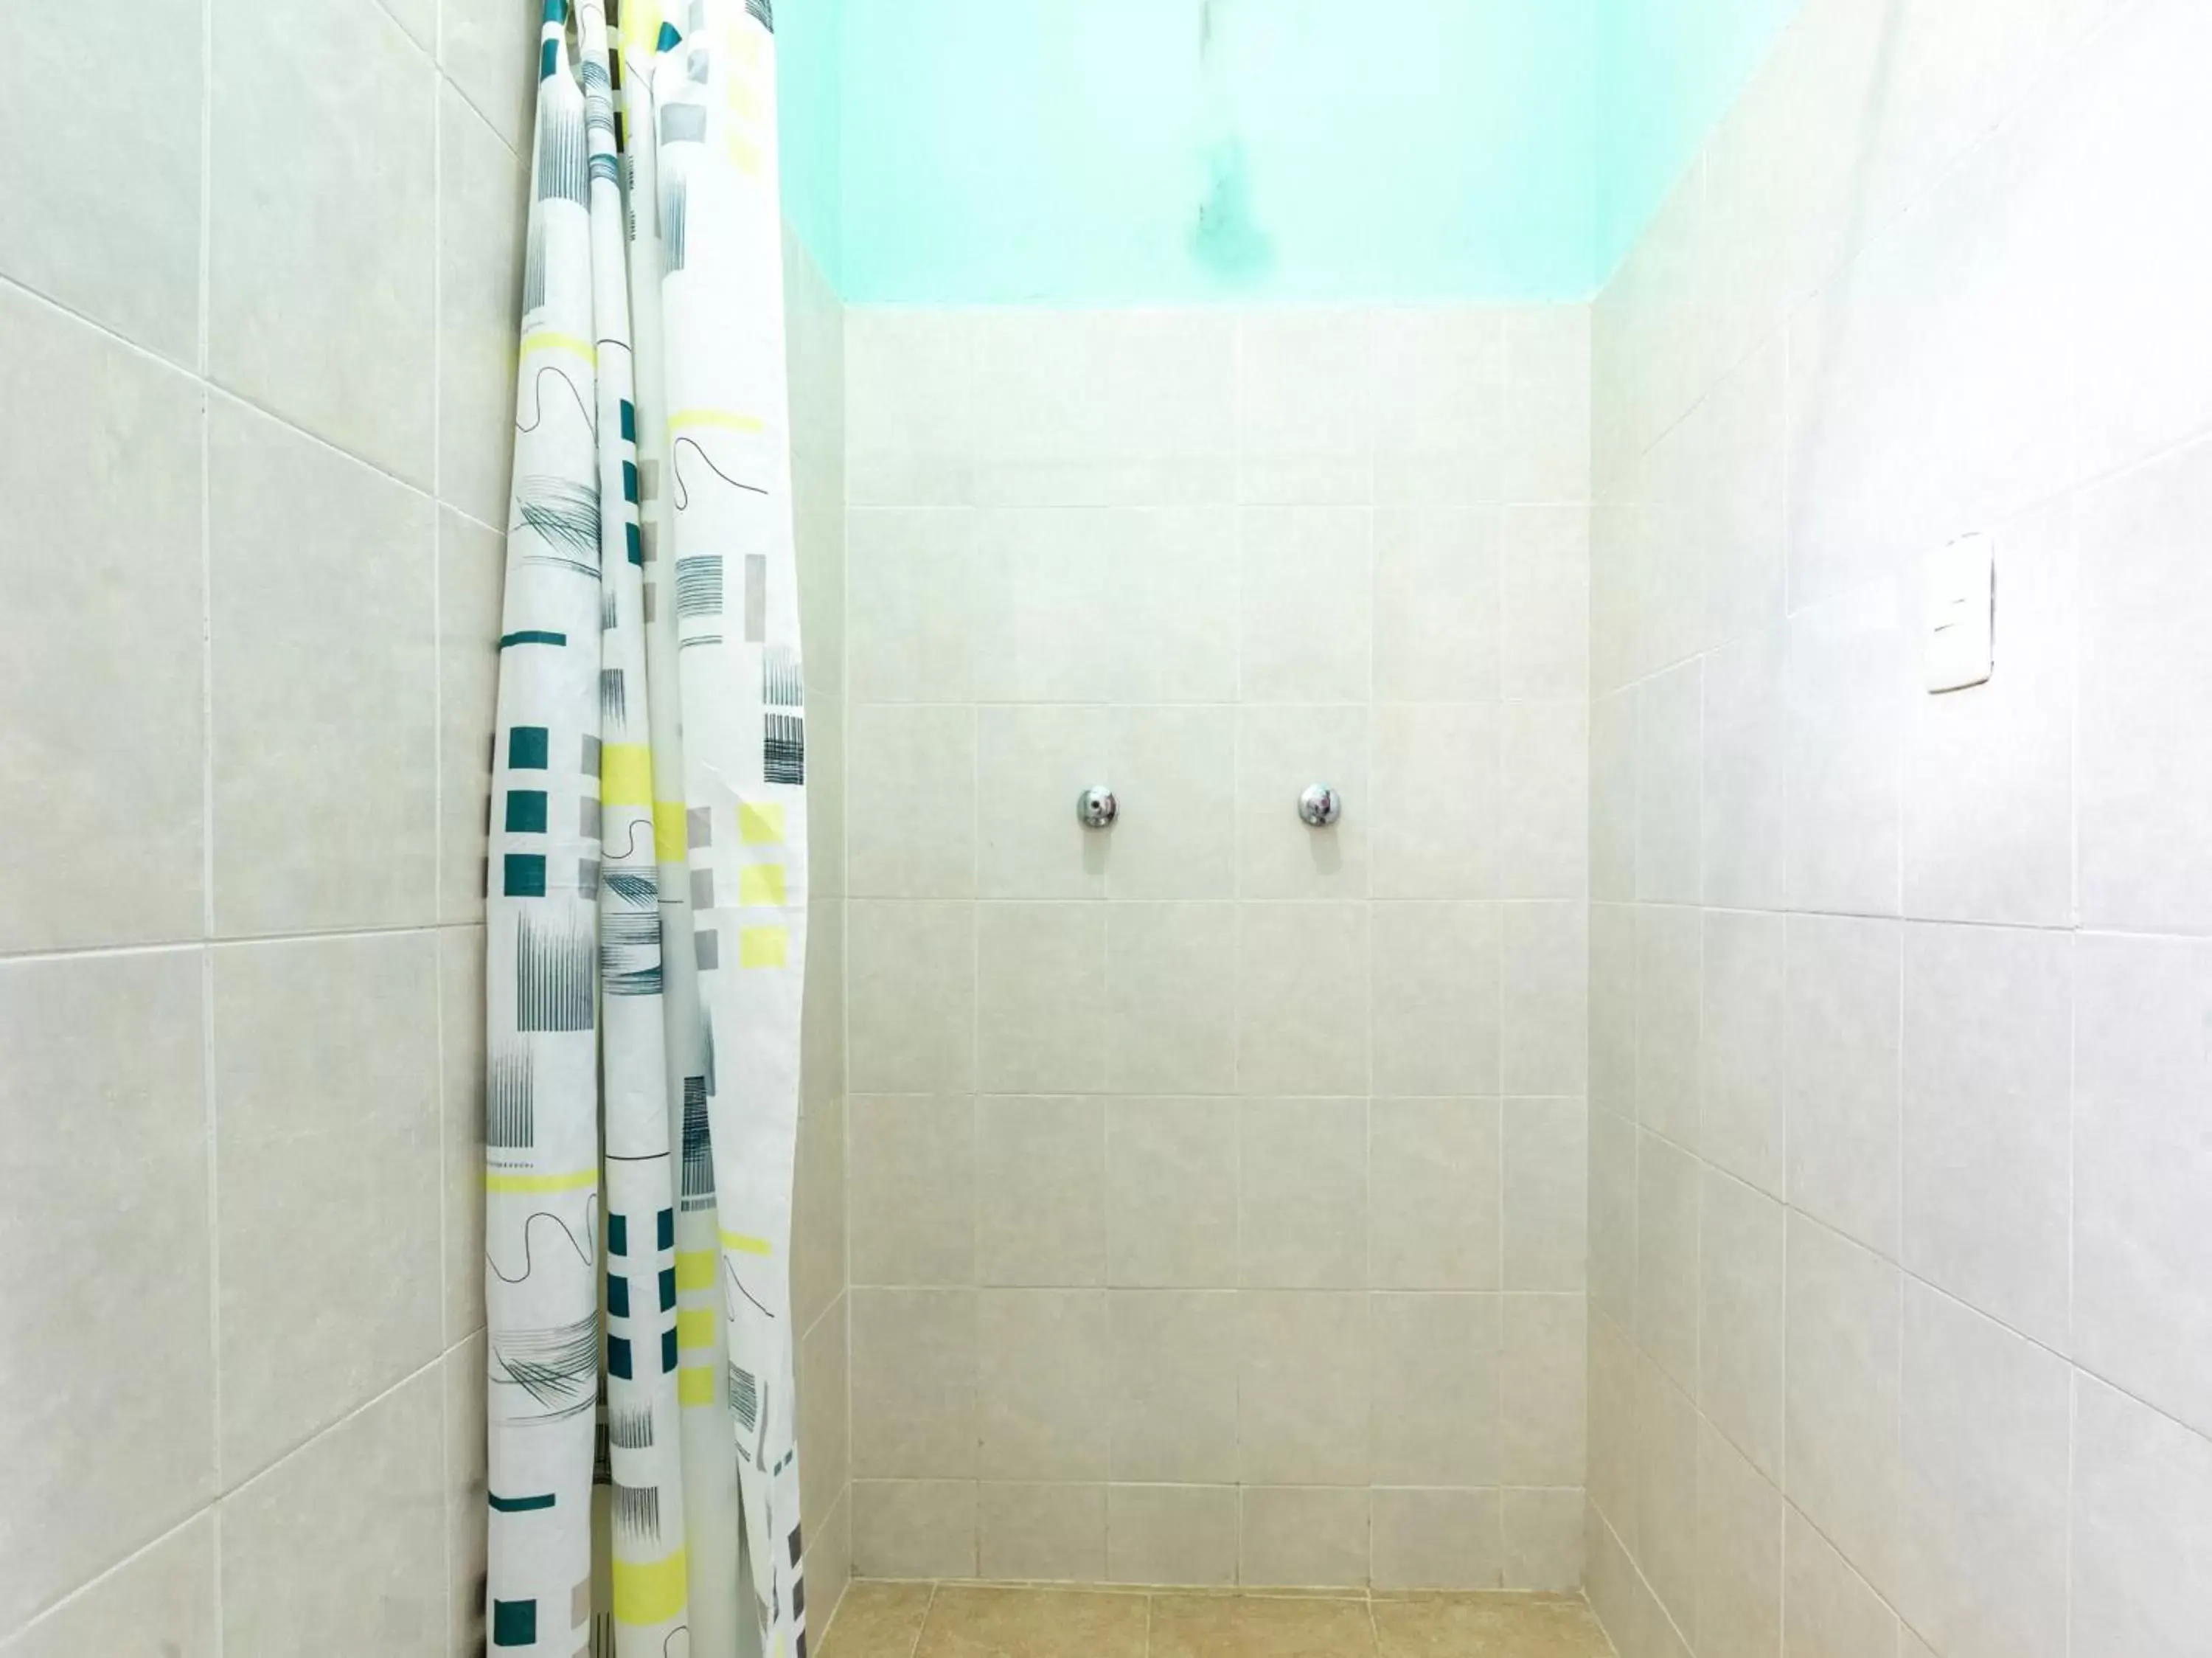 Bathroom in Hotel Hacienda Bacalar